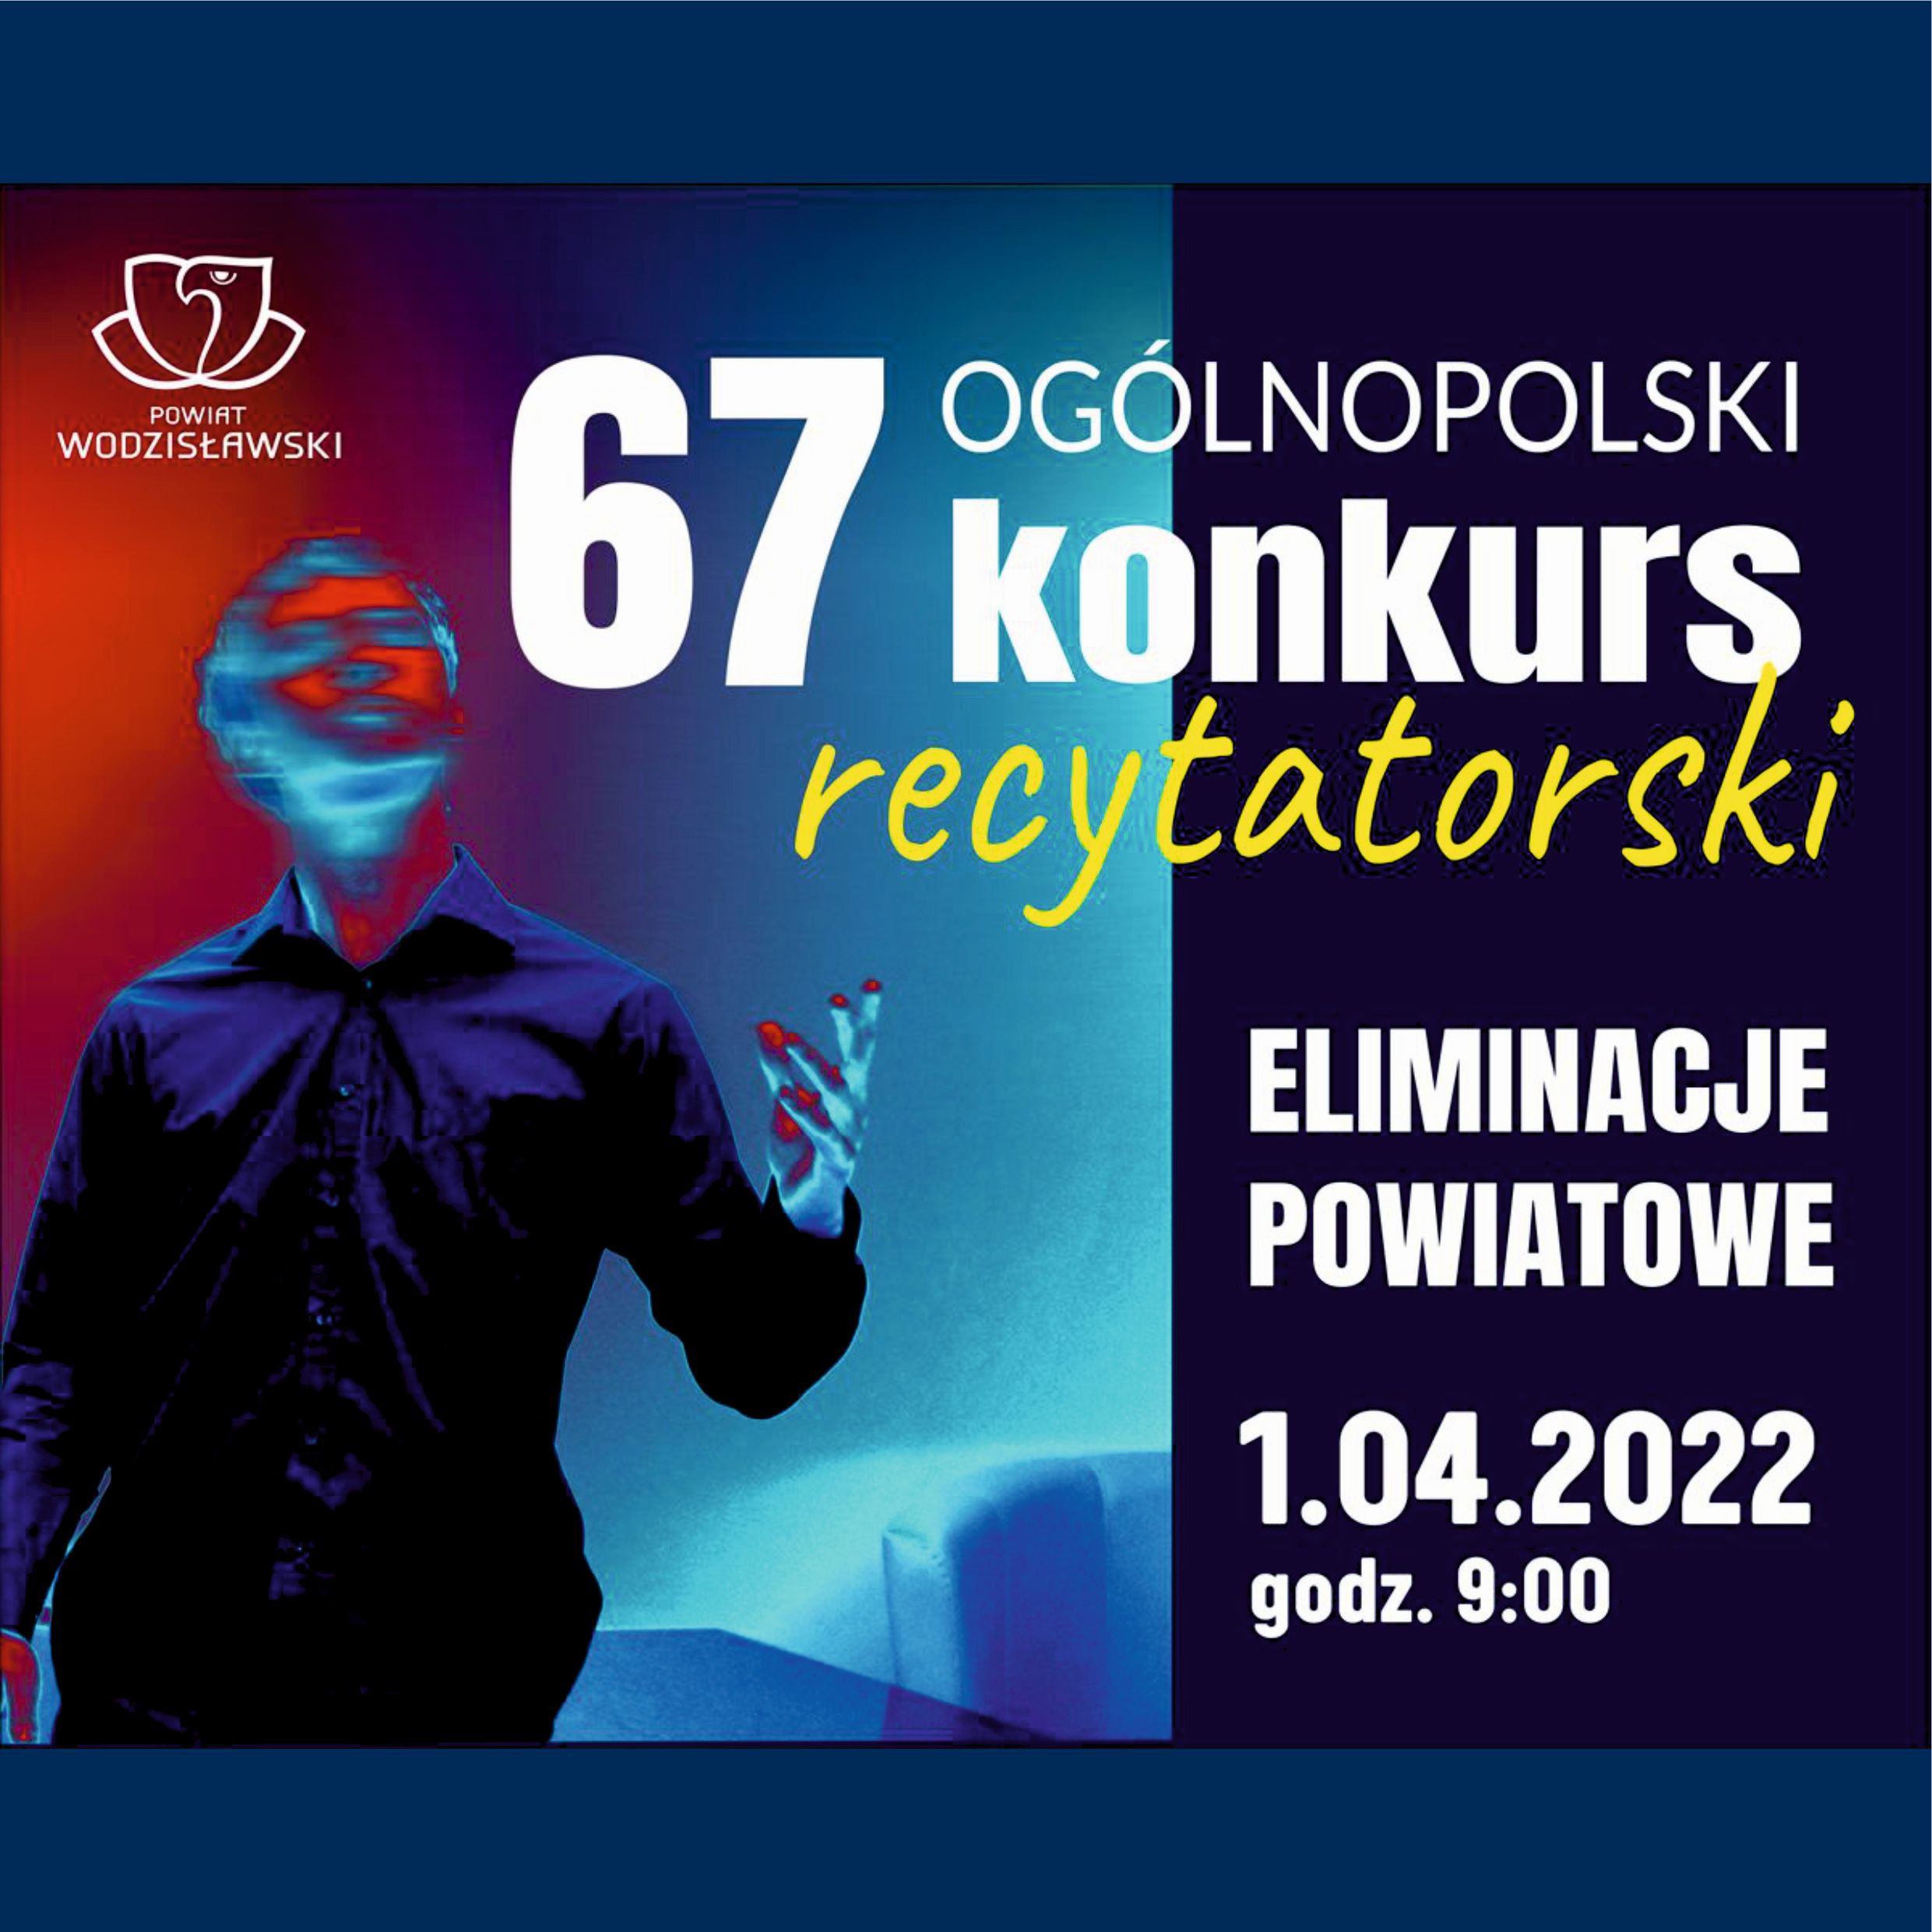 67 Ogólnopolski Konkurs Recytatorski - Eliminacje - Powiat Wodzisławski - Kwadrat